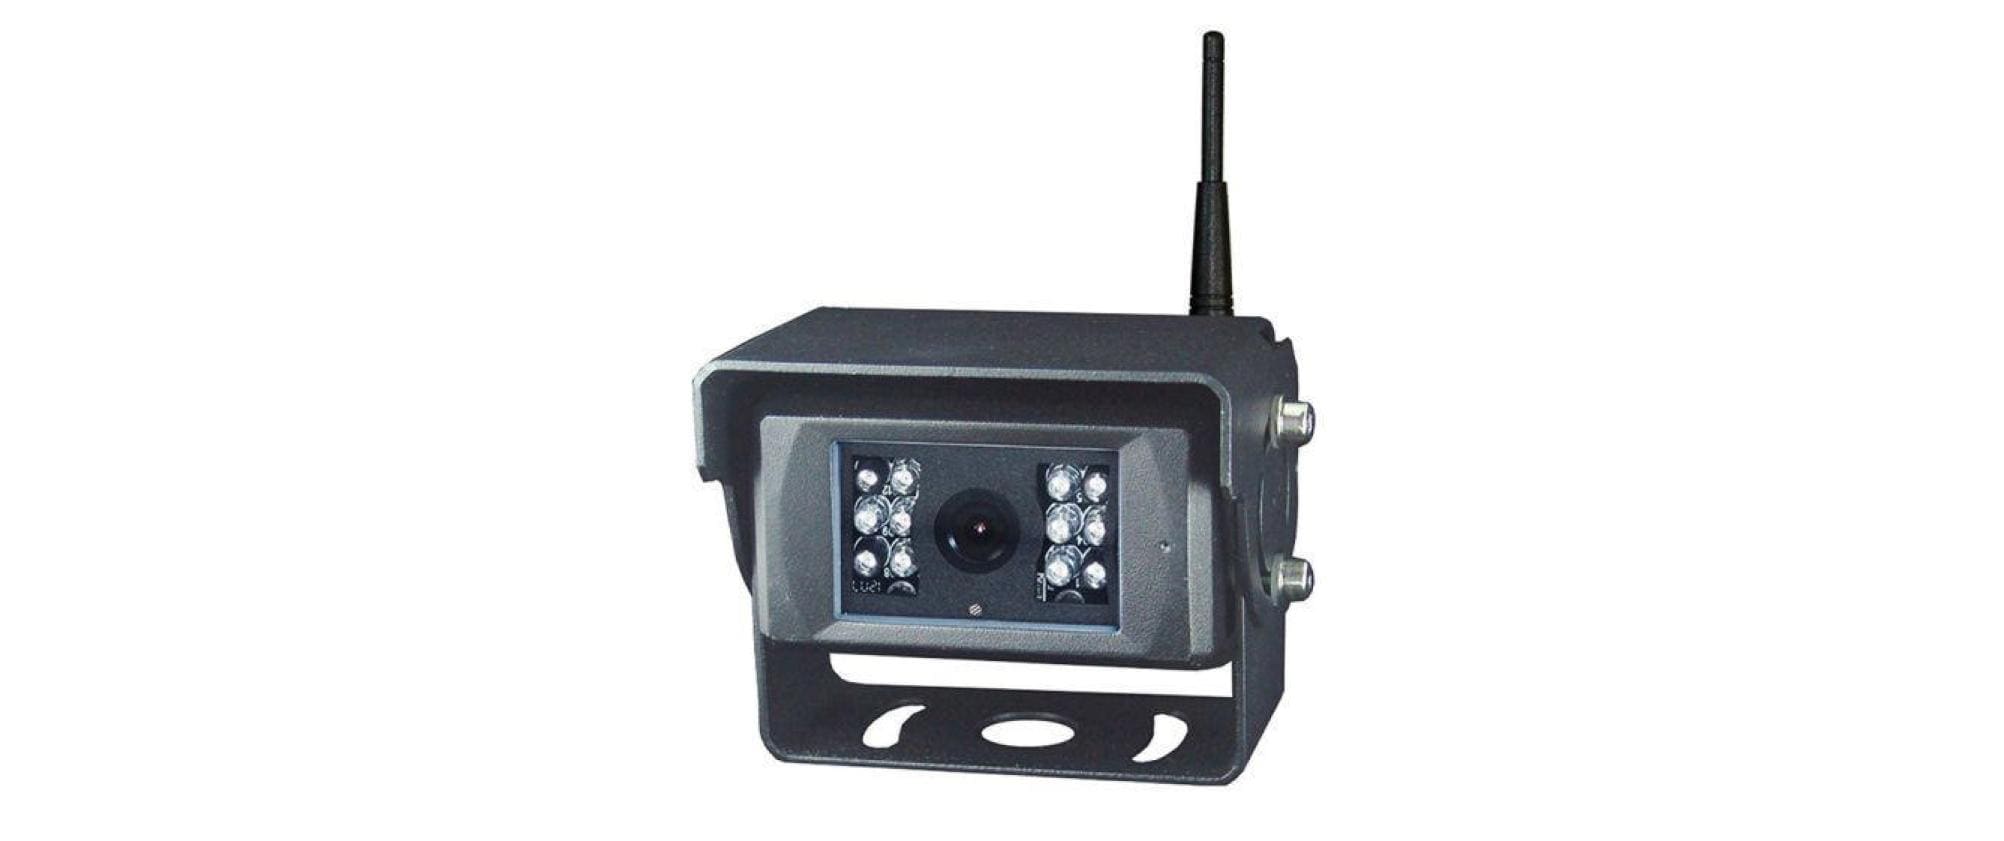 AL-Fahrzeugteile Parksensorik Kamera für Rückfahrsystem